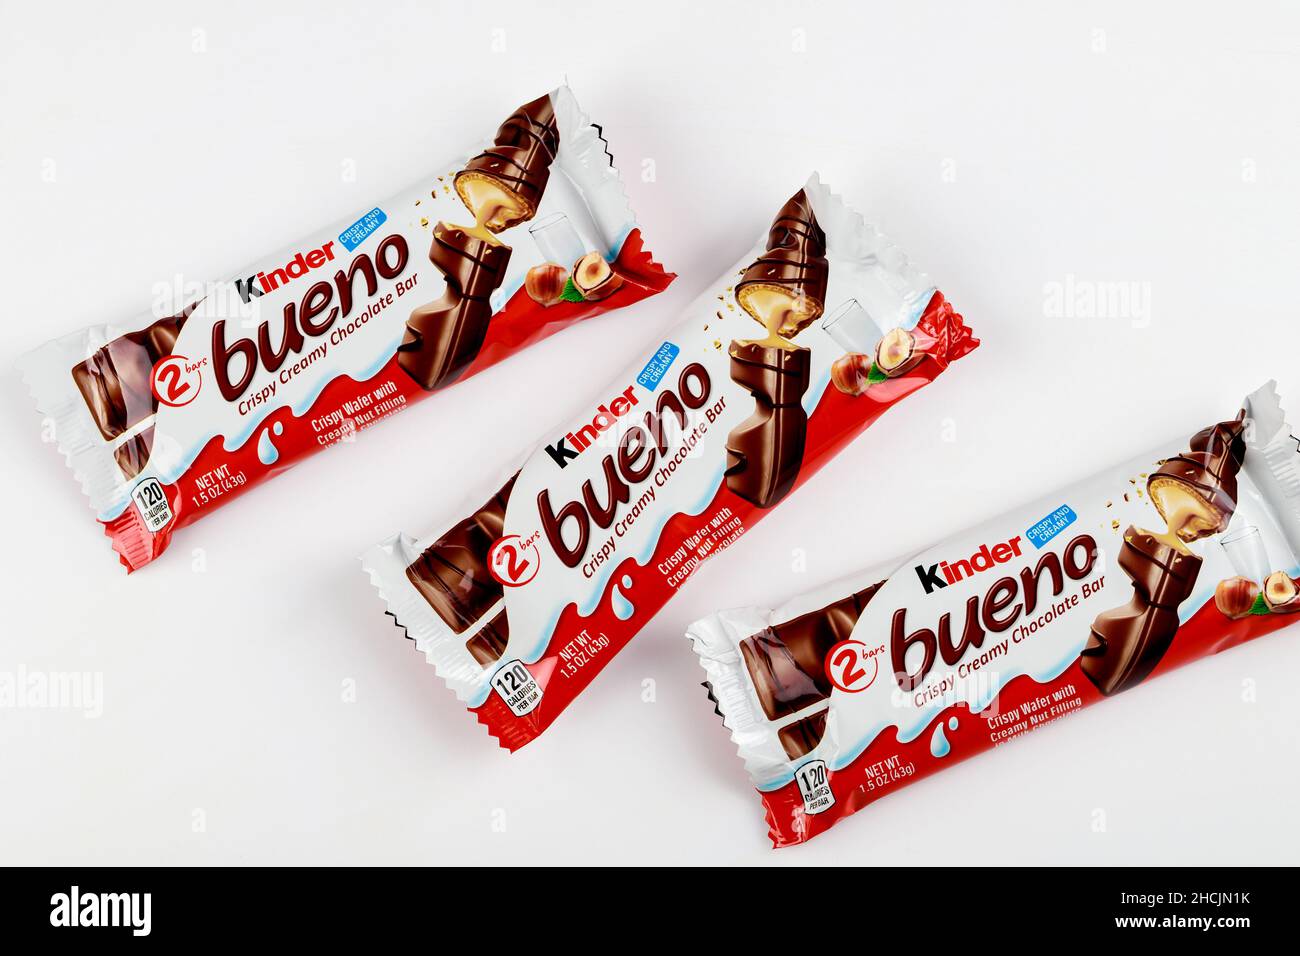 Kinder Bueno Crispy Creamy Chocolate Bars, 20 ct.